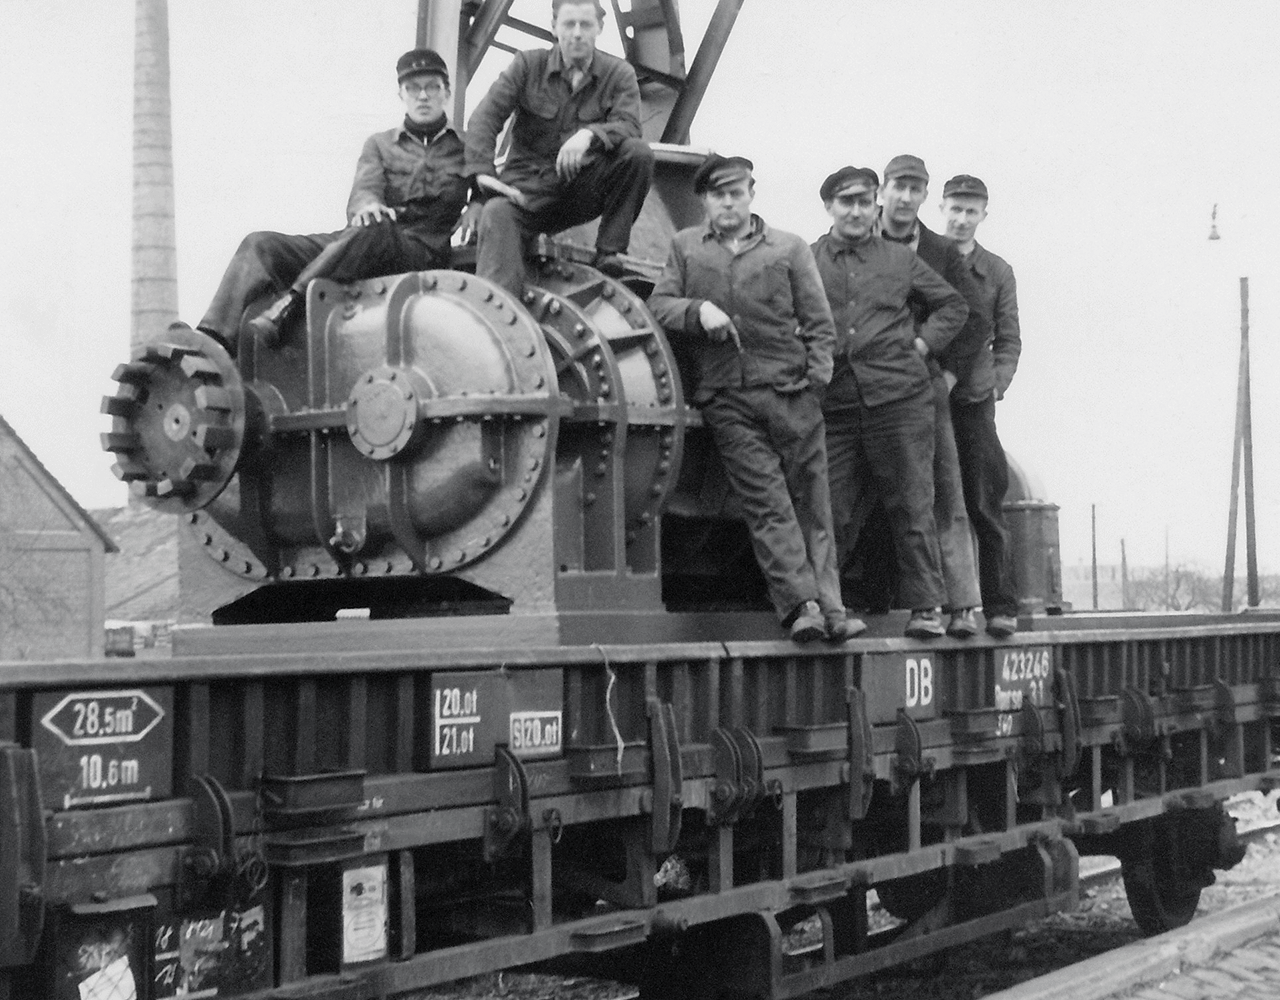 正排量鼓風機正由火車運往柏林，圖為員工們坐在鼓風機上的照片